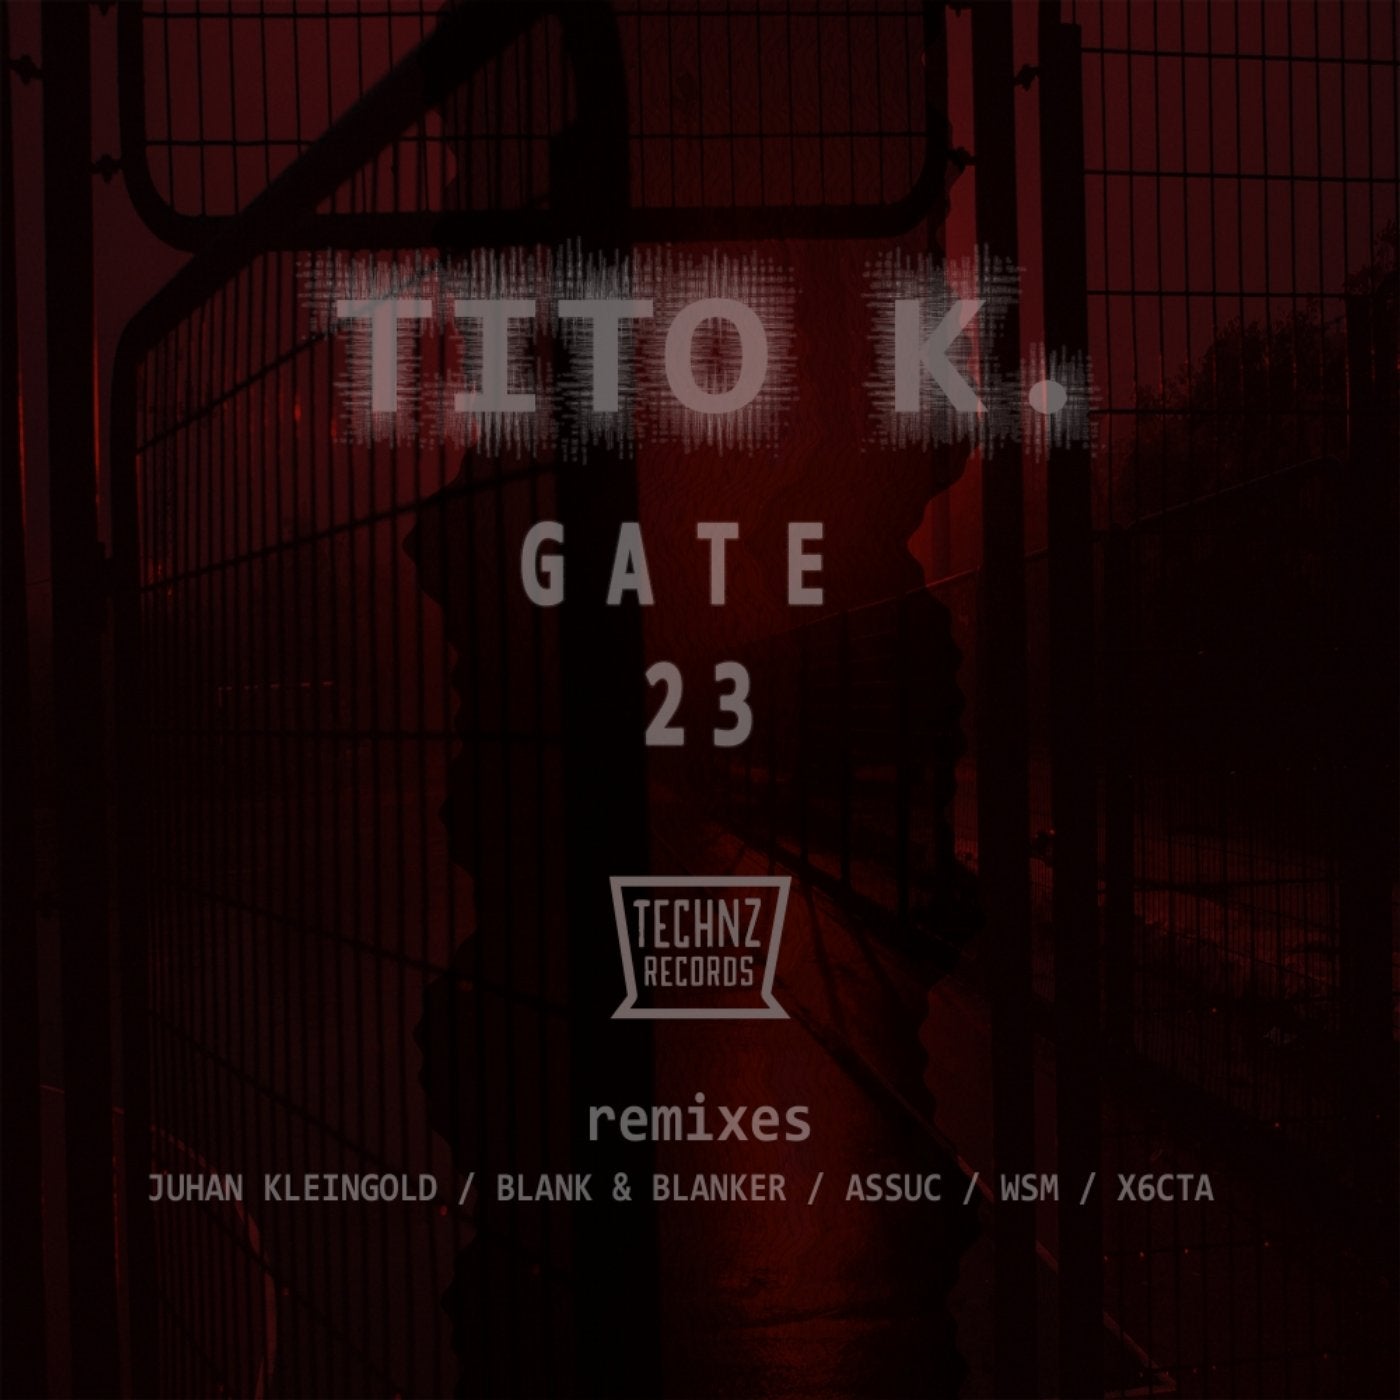 Gate 23